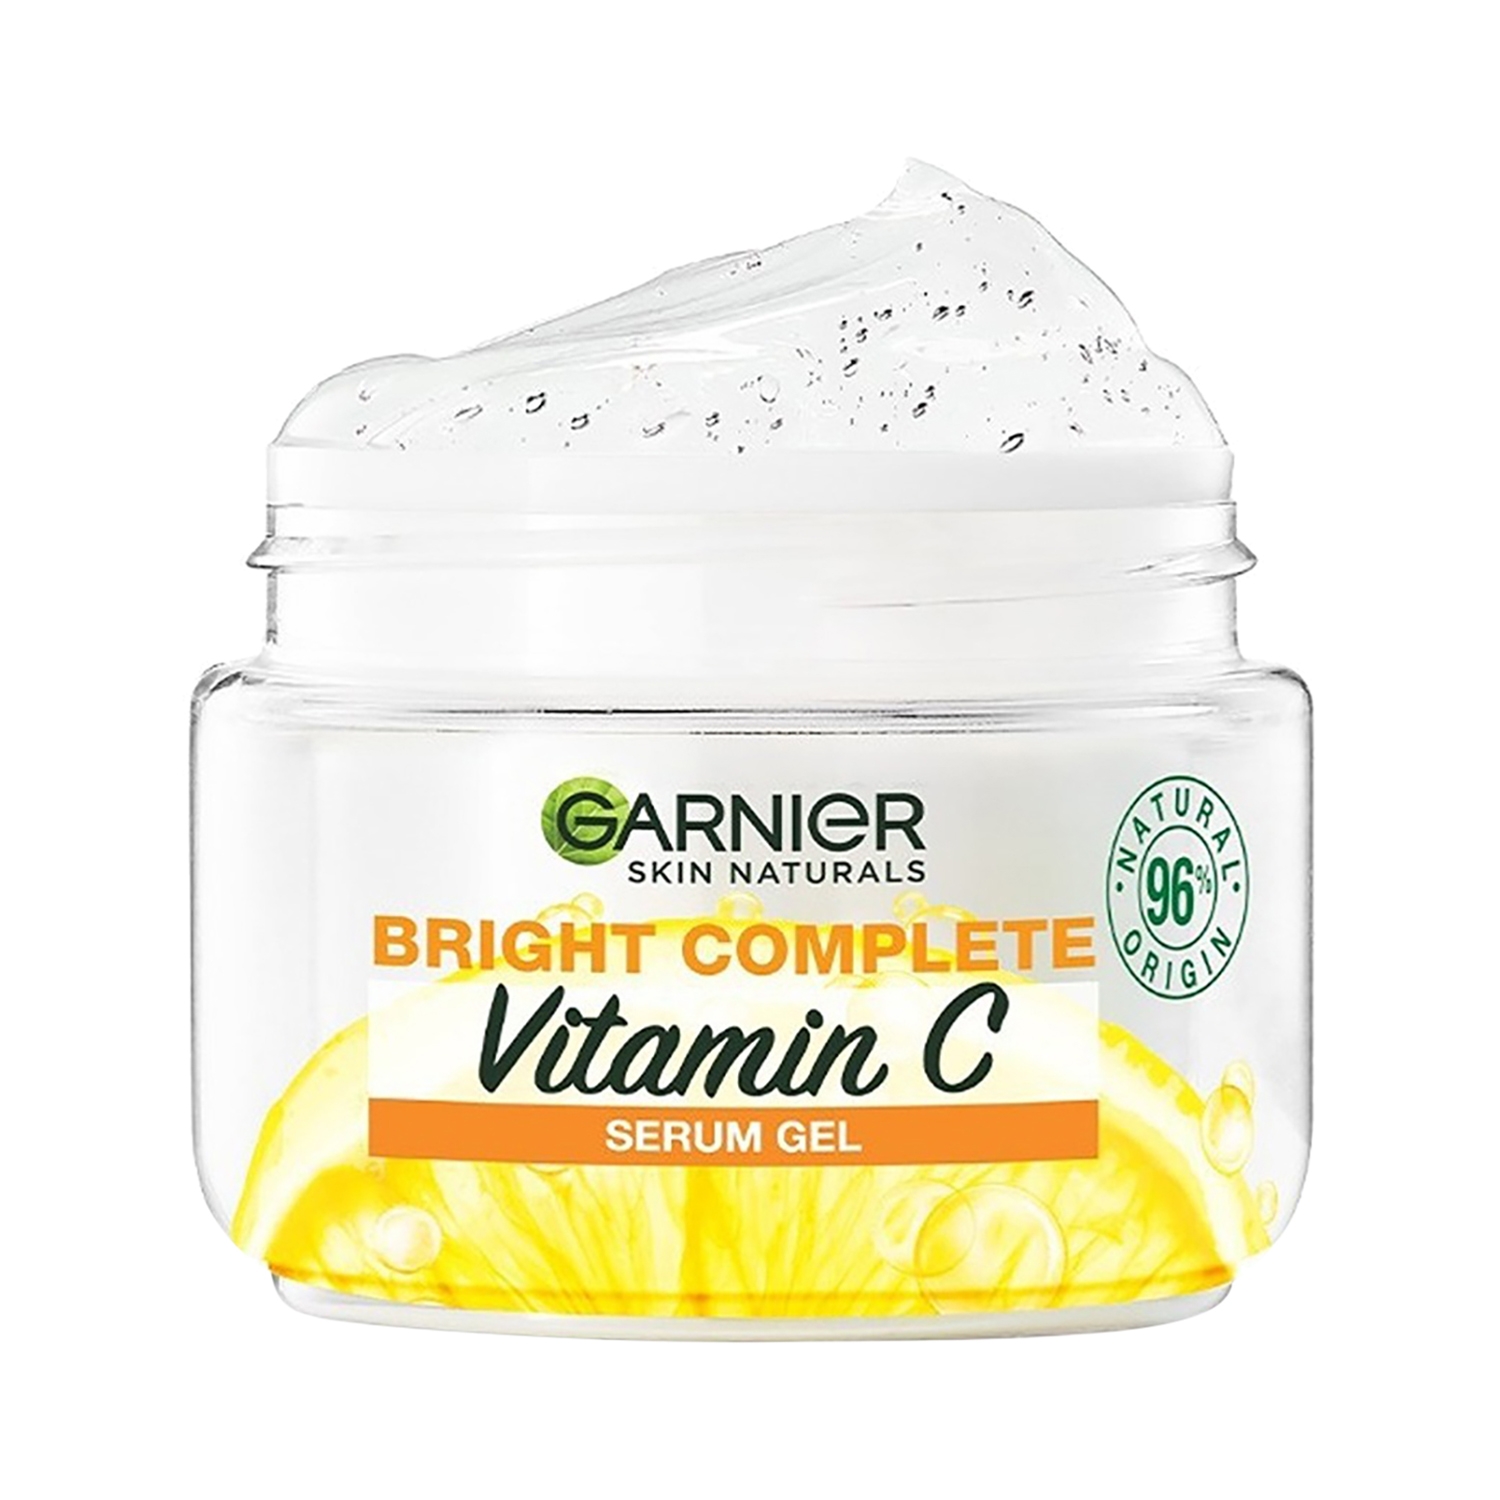 Garnier | Garnier Bright Complete Vitamin C Serum Gel (45g)